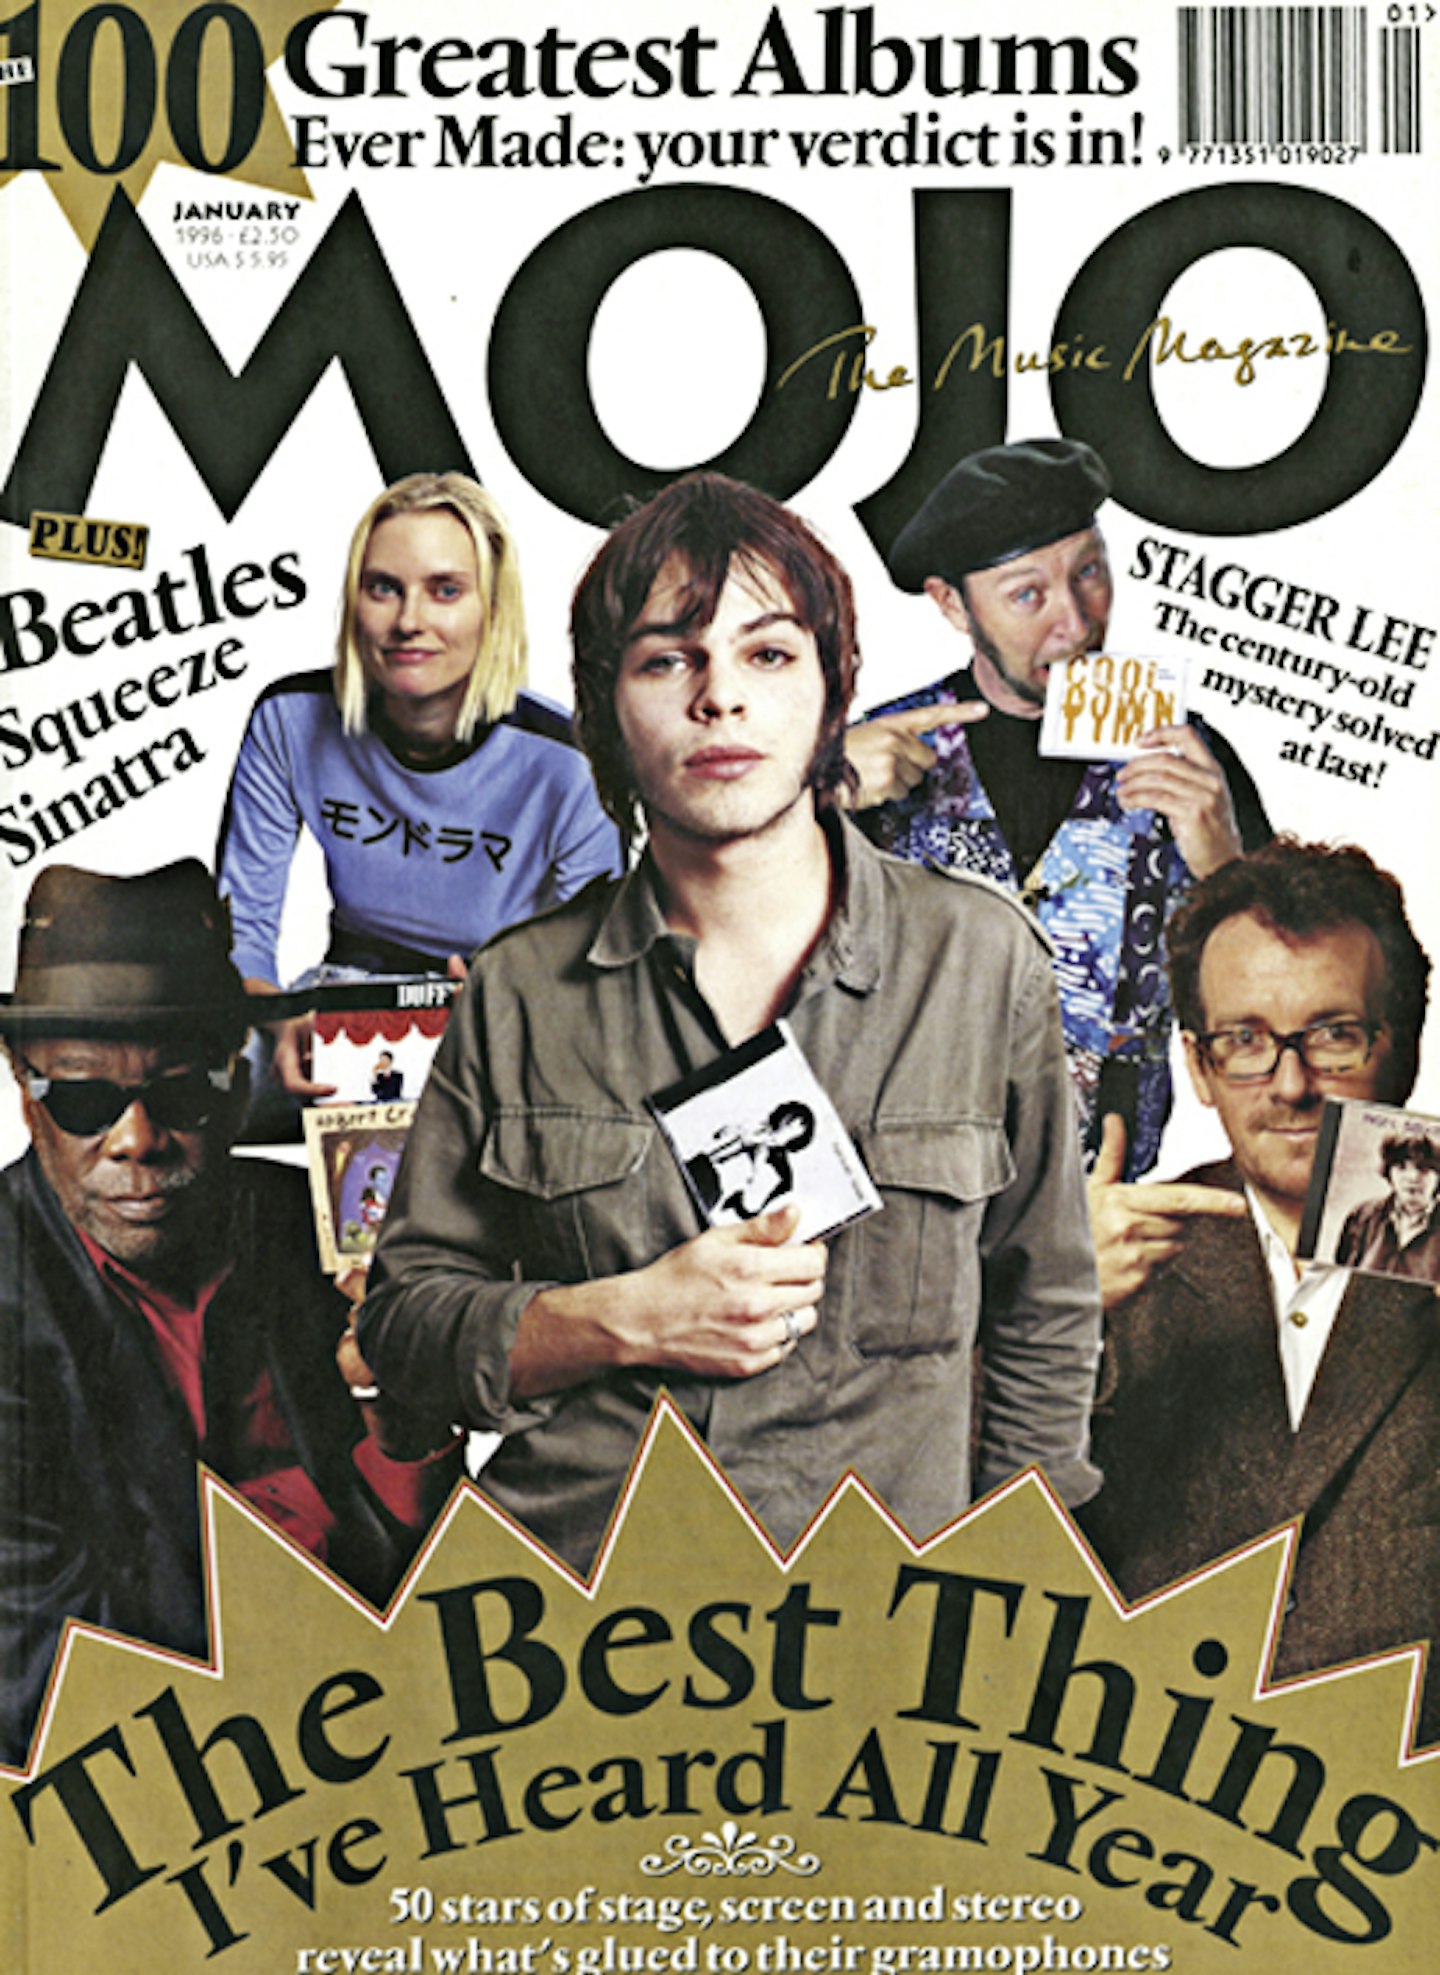 MOJO Issue 26 / January 1996